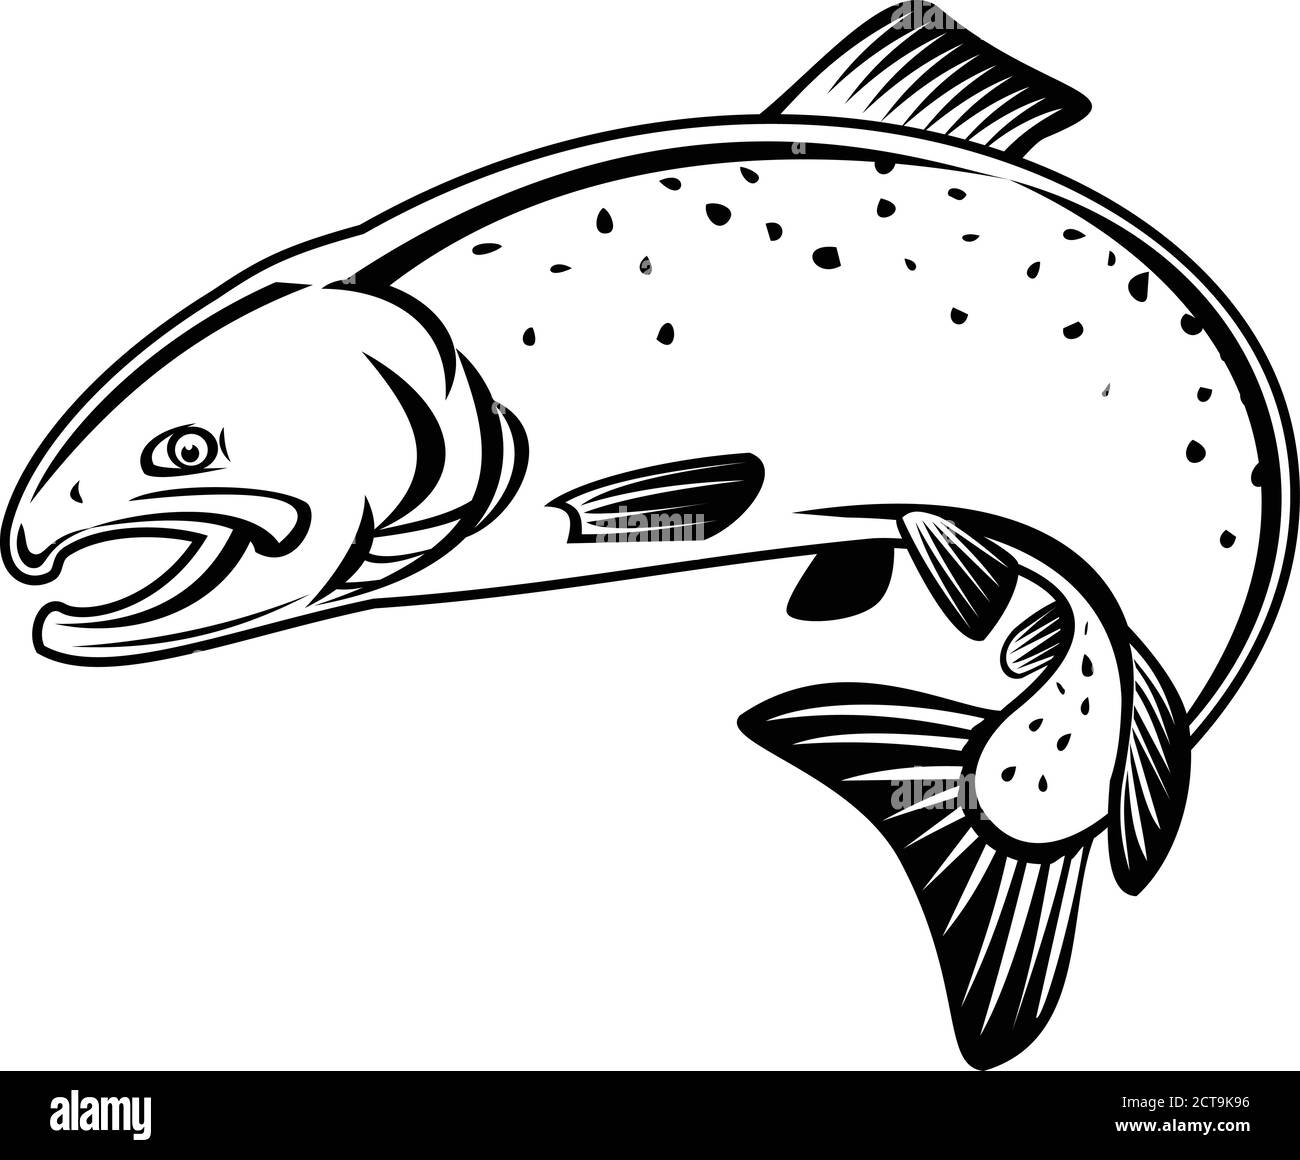 Illustration de style rétro représentant un saumon coho, un kisutch oncorhynchus, un saumon argenté ou des foies, une espèce de poissons anadromes qui sautent Illustration de Vecteur